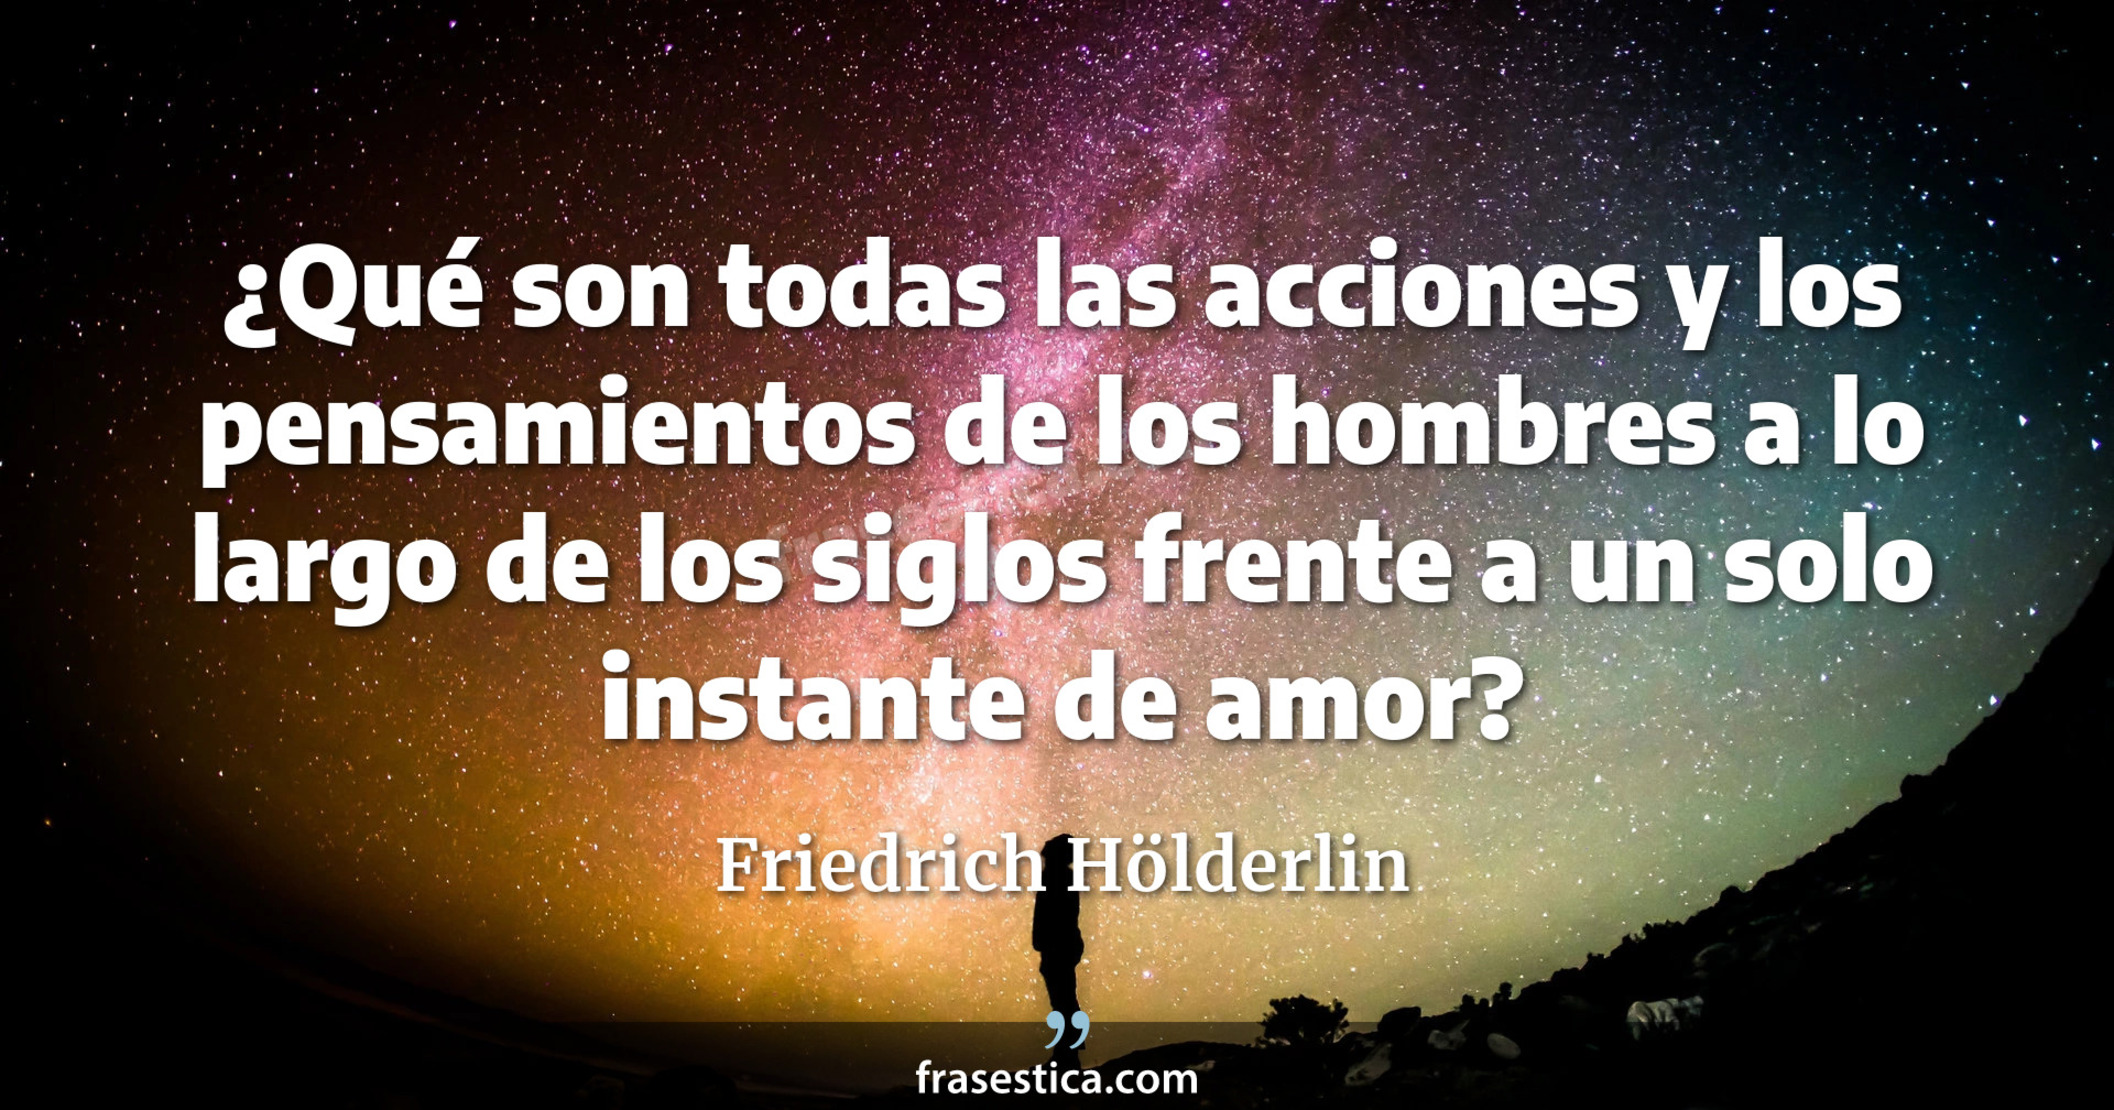 ¿Qué son todas las acciones y los pensamientos de los hombres a lo largo de los siglos frente a un solo instante de amor? - Friedrich Hölderlin